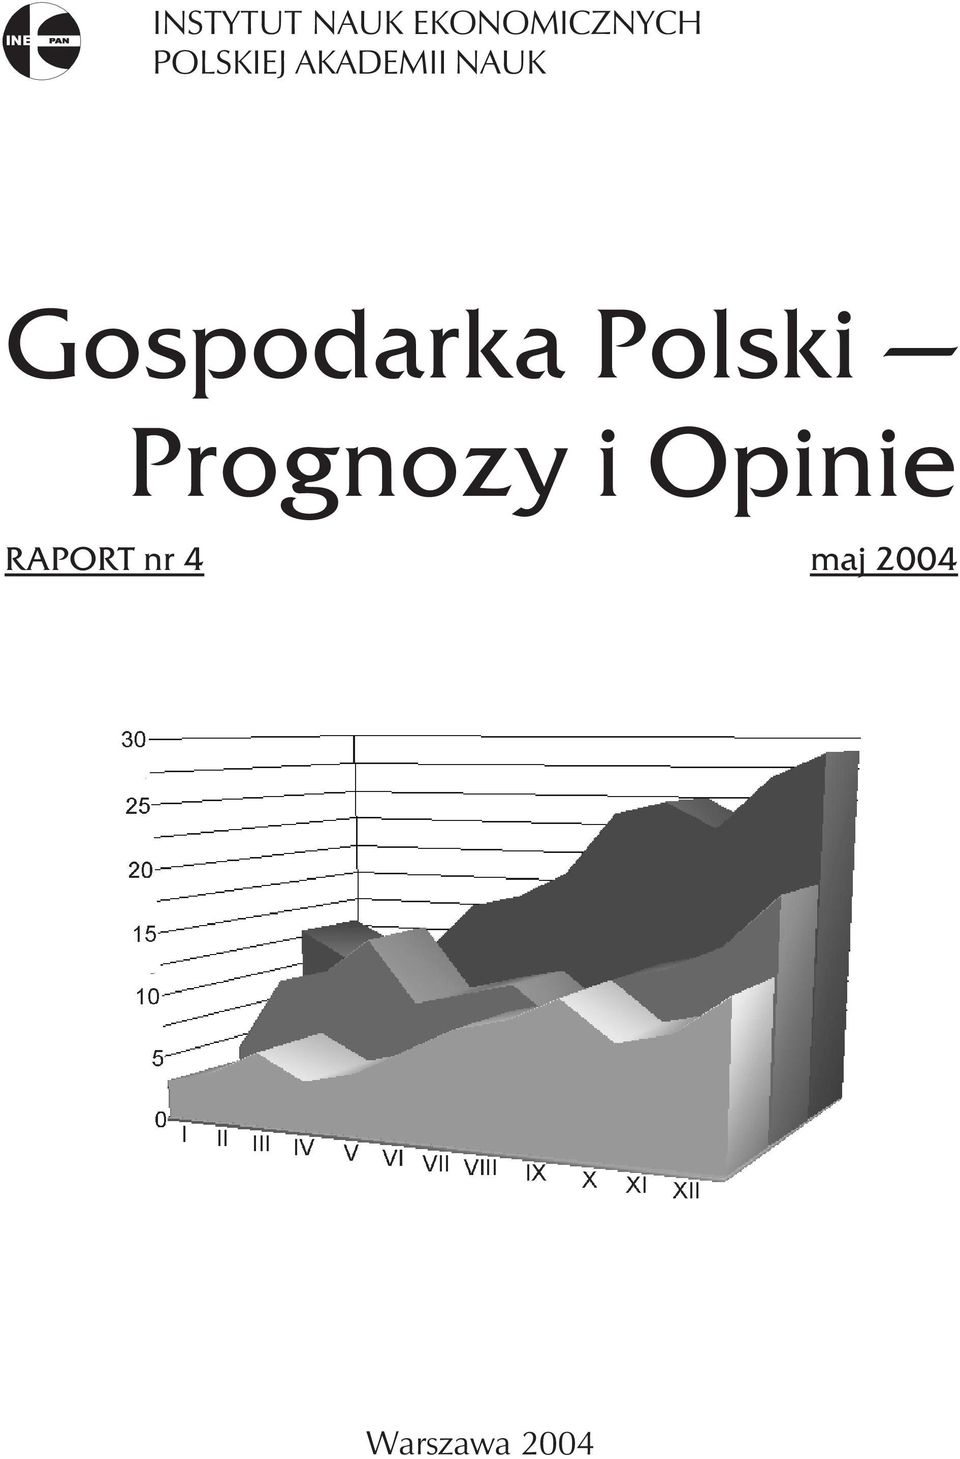 NAUK Gospodarka Polski Prognozy